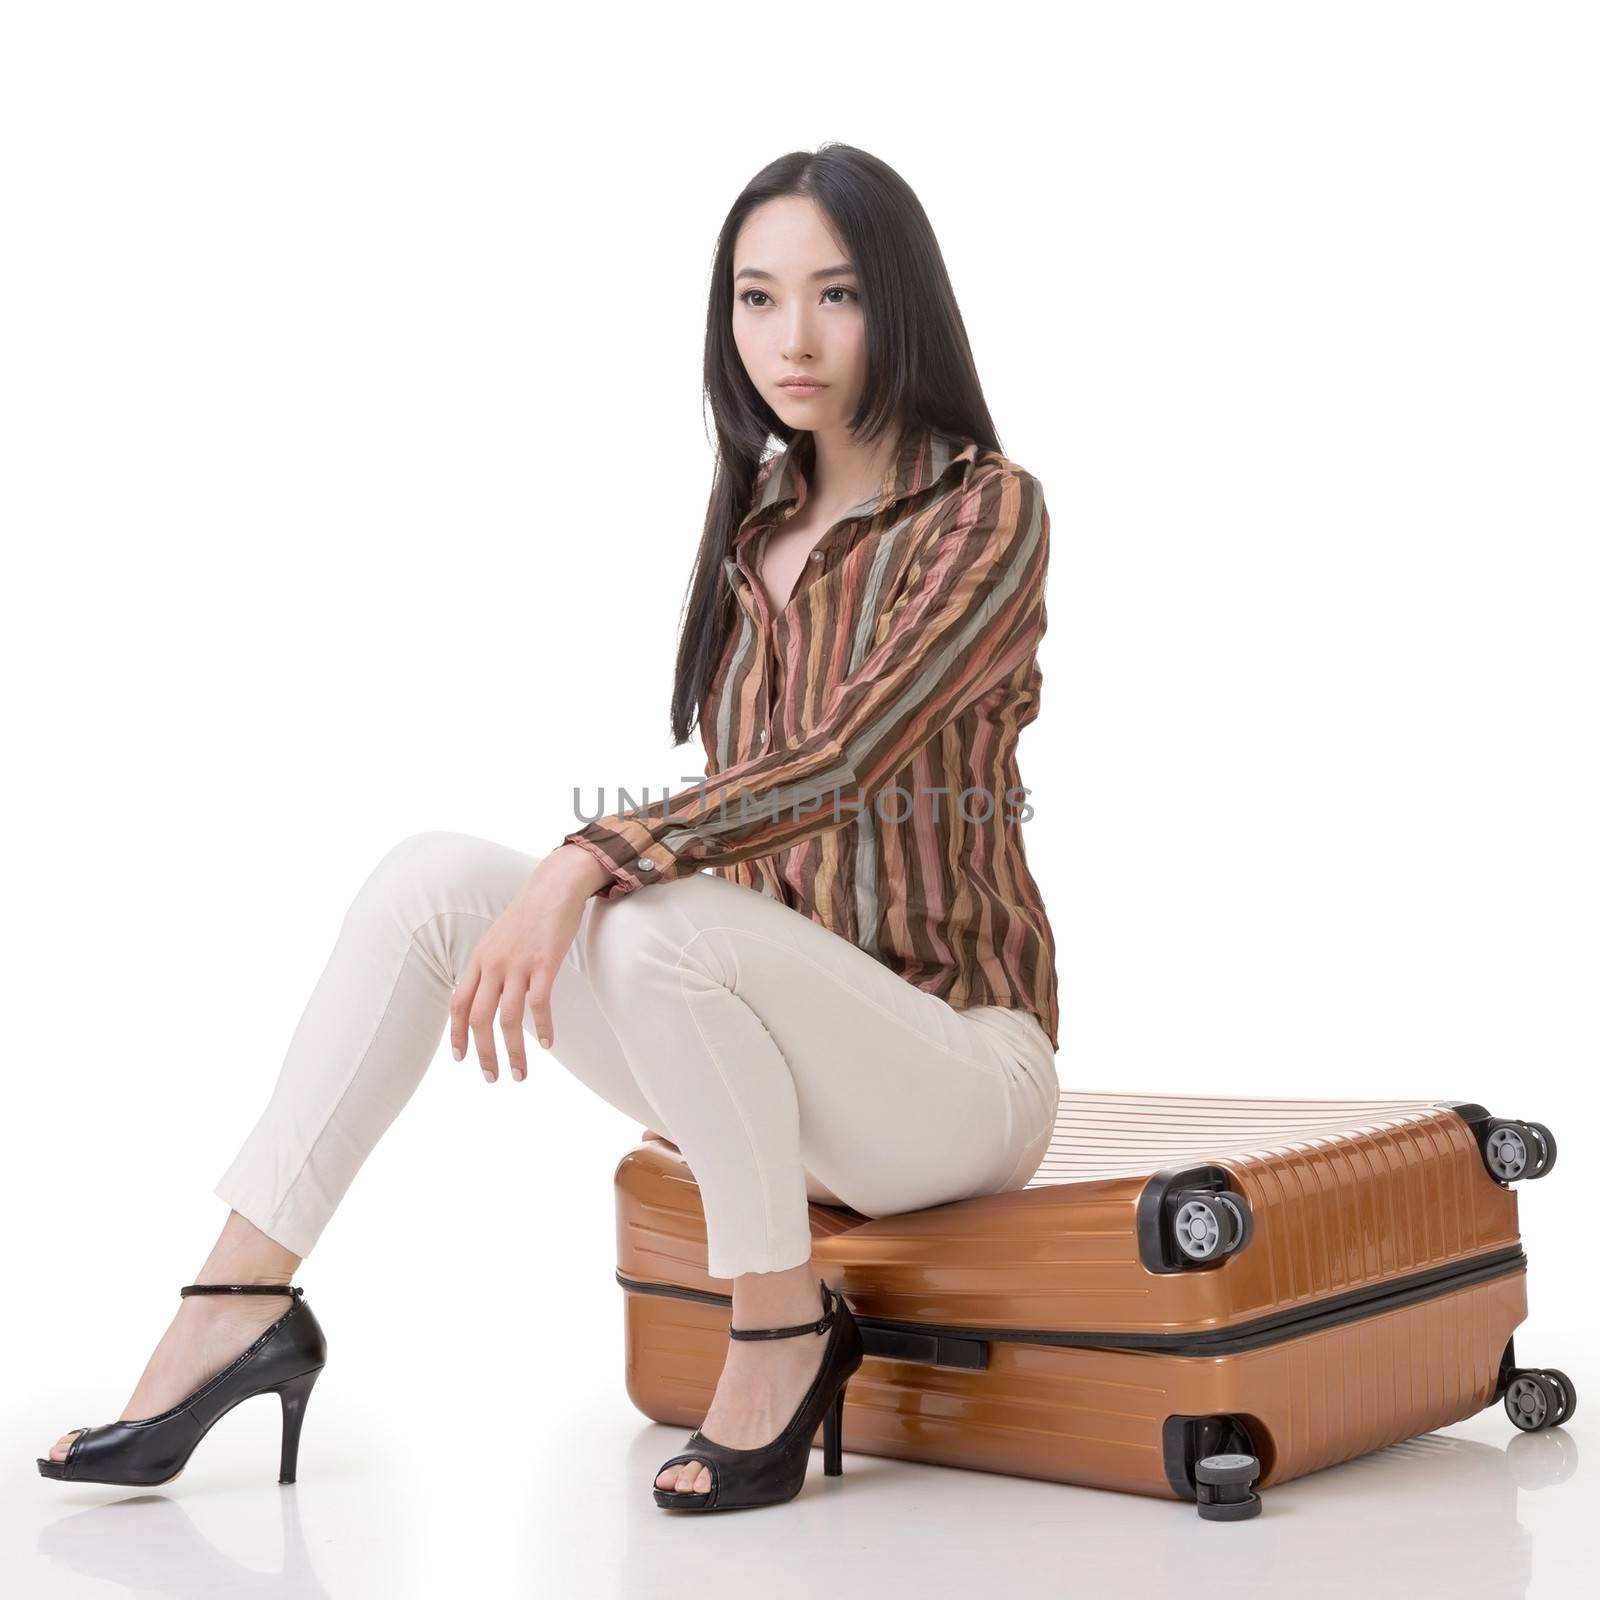 Asian woman thinking and sitting on a luggage by elwynn